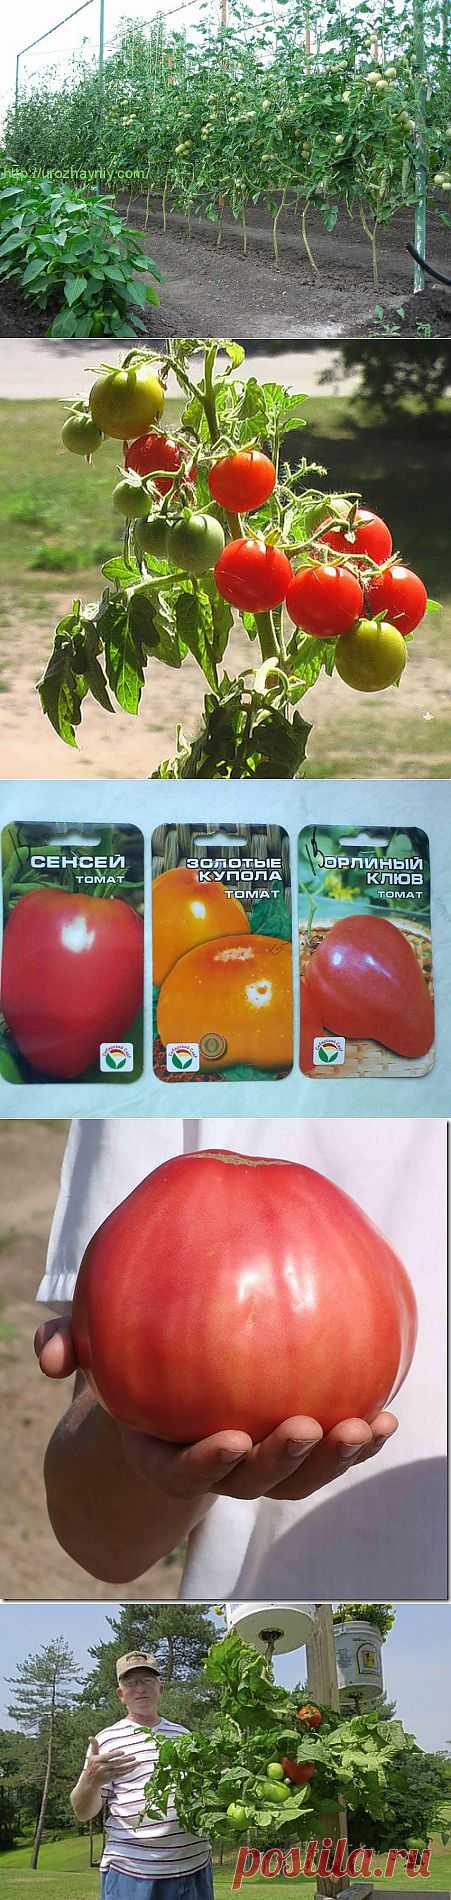 томаты помидоры из помидор | Записи с меткой томаты помидоры из помидор | Дача, сад и огород круглый год!